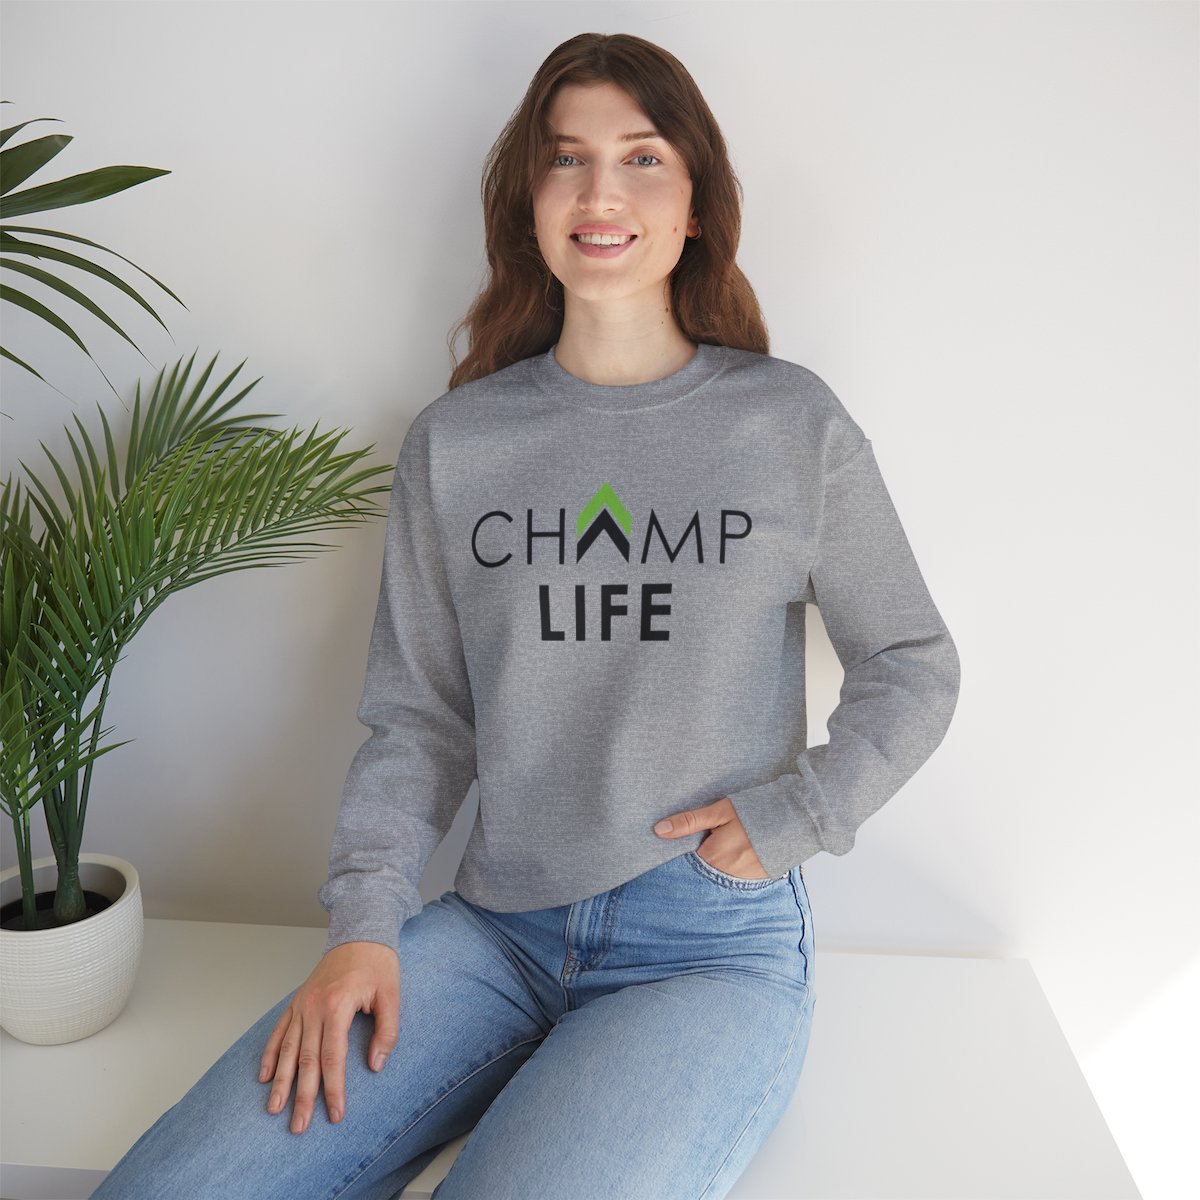 Champ Life Unisex Crewneck Sweatshirt - White, Gray product thumbnail image